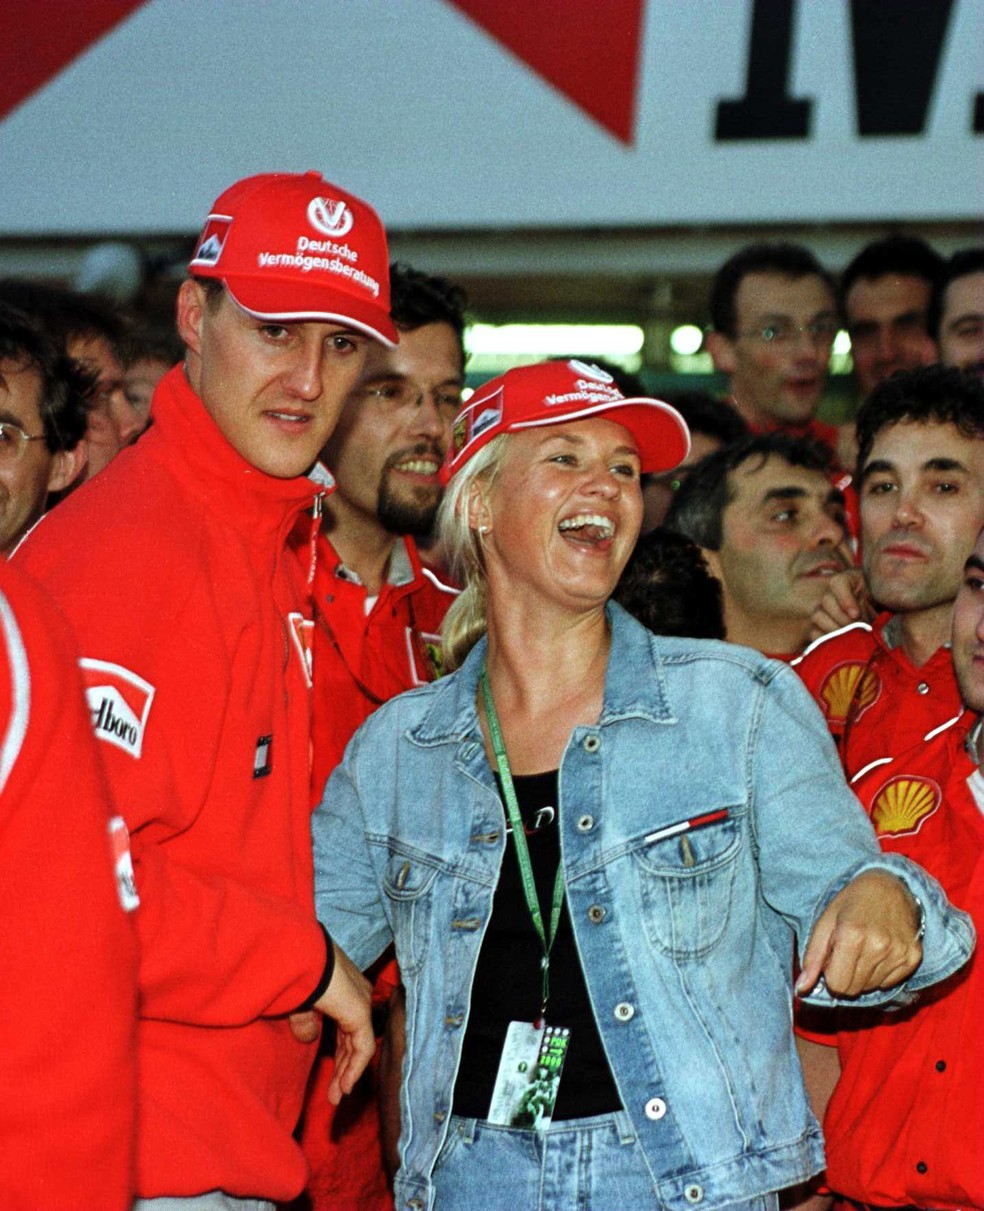 Michael Schumacher da Alemanha e Ferrari com sua esposa, Corinna, depois de vencer o campeonato mundial de Fórmula 1 no Grande Prêmio do Japão em Suzuka, Japão, em outubro de 2000 — Foto: Getty Images